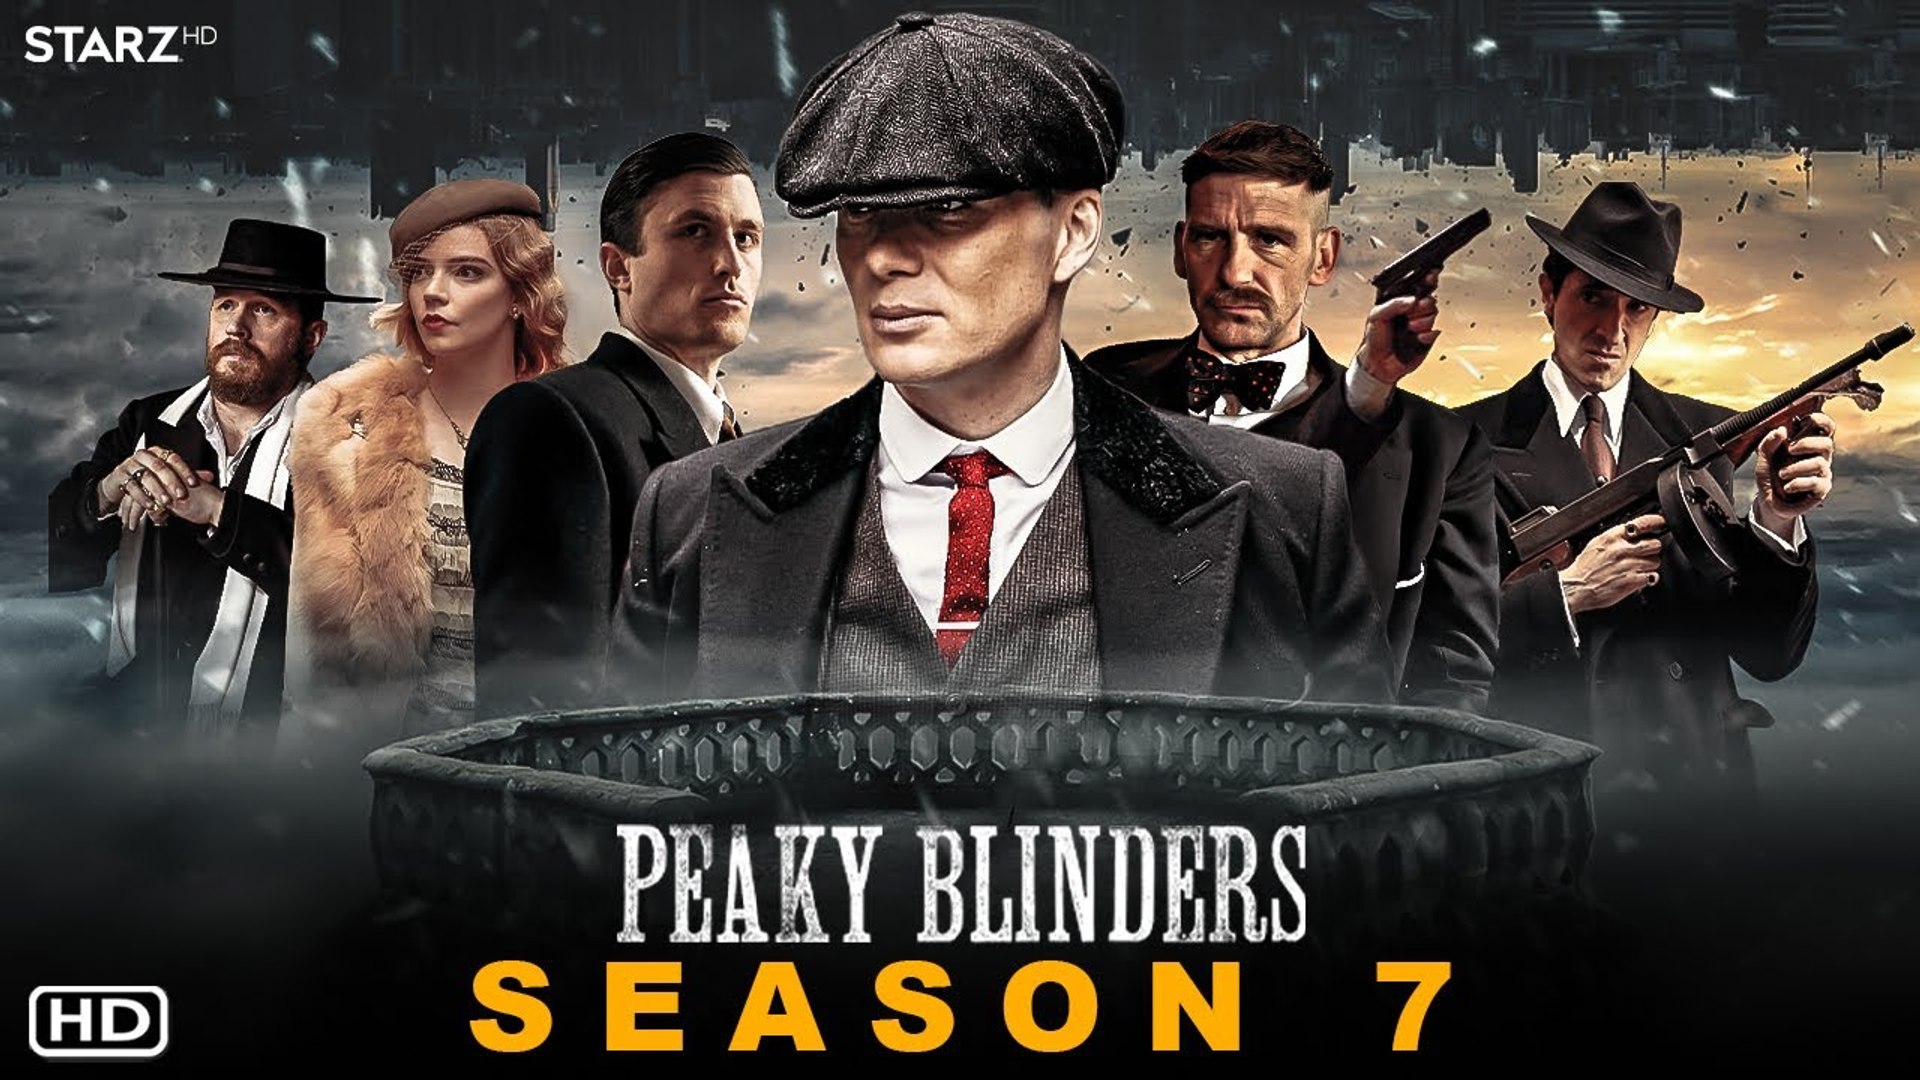 Peaky Blinders movie will begin filming in 2023, says series